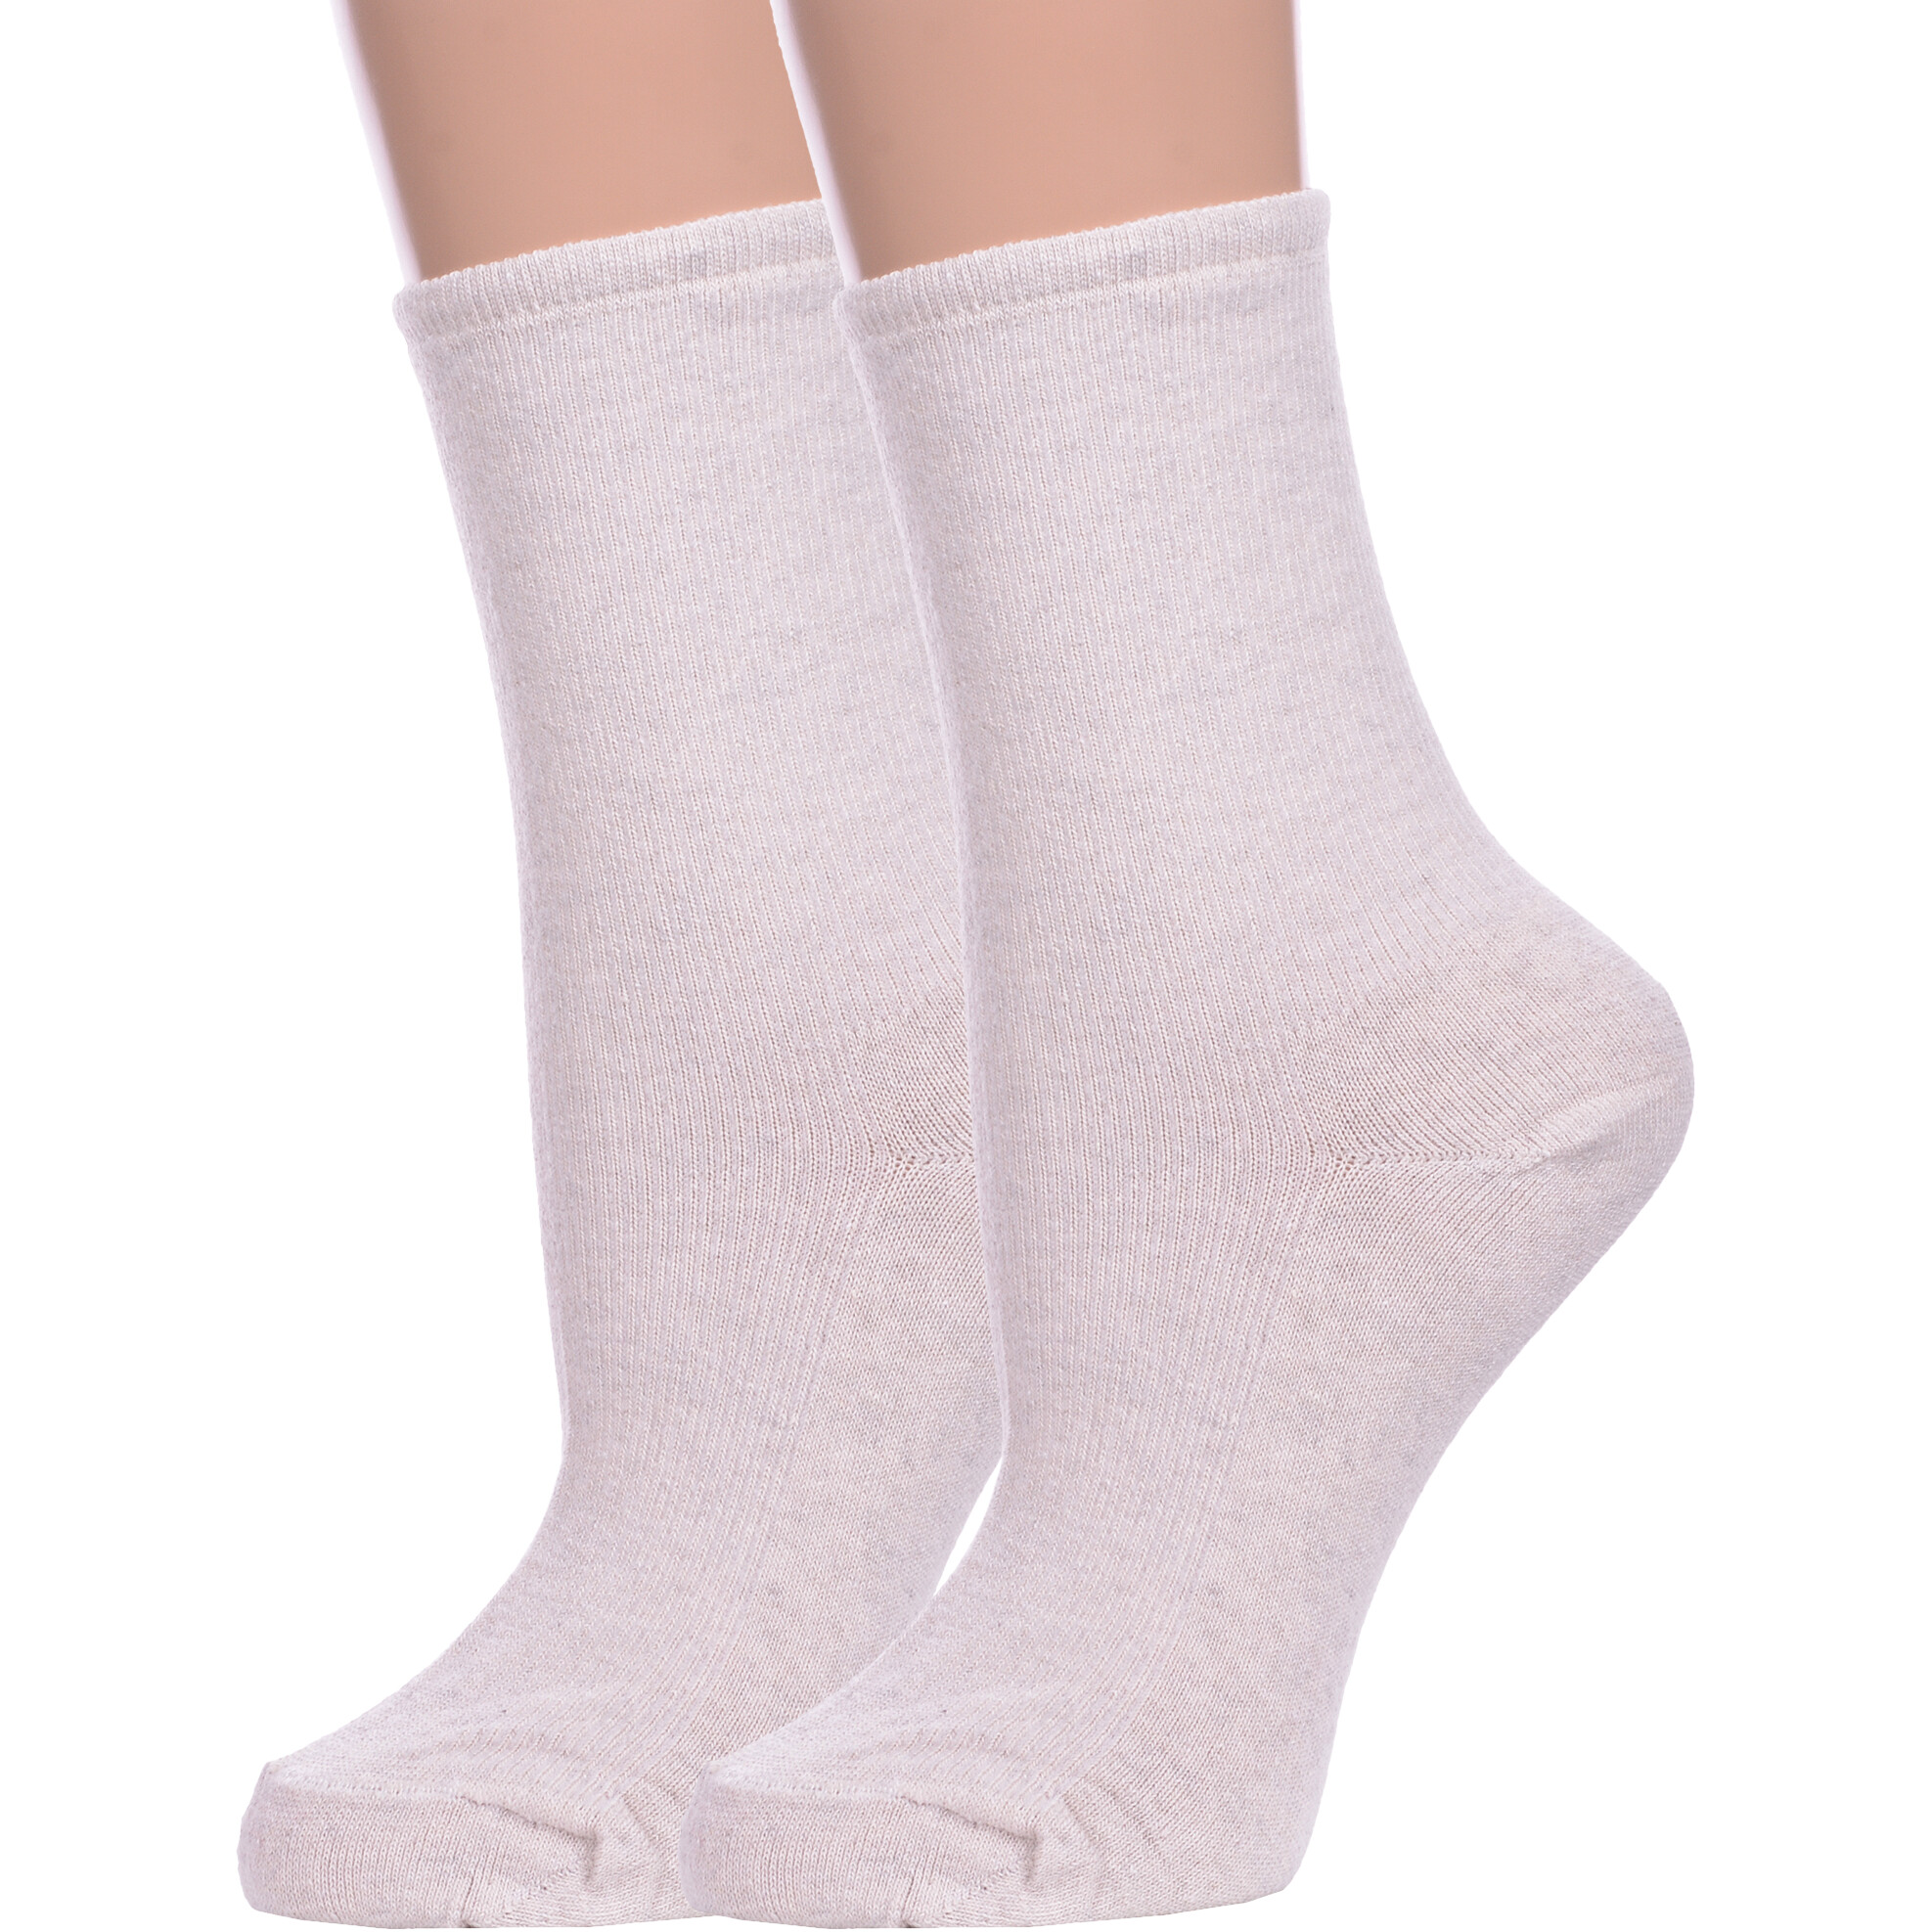 Комплект носков женских Альтаир 2-М198 бежевых 23 2 пары